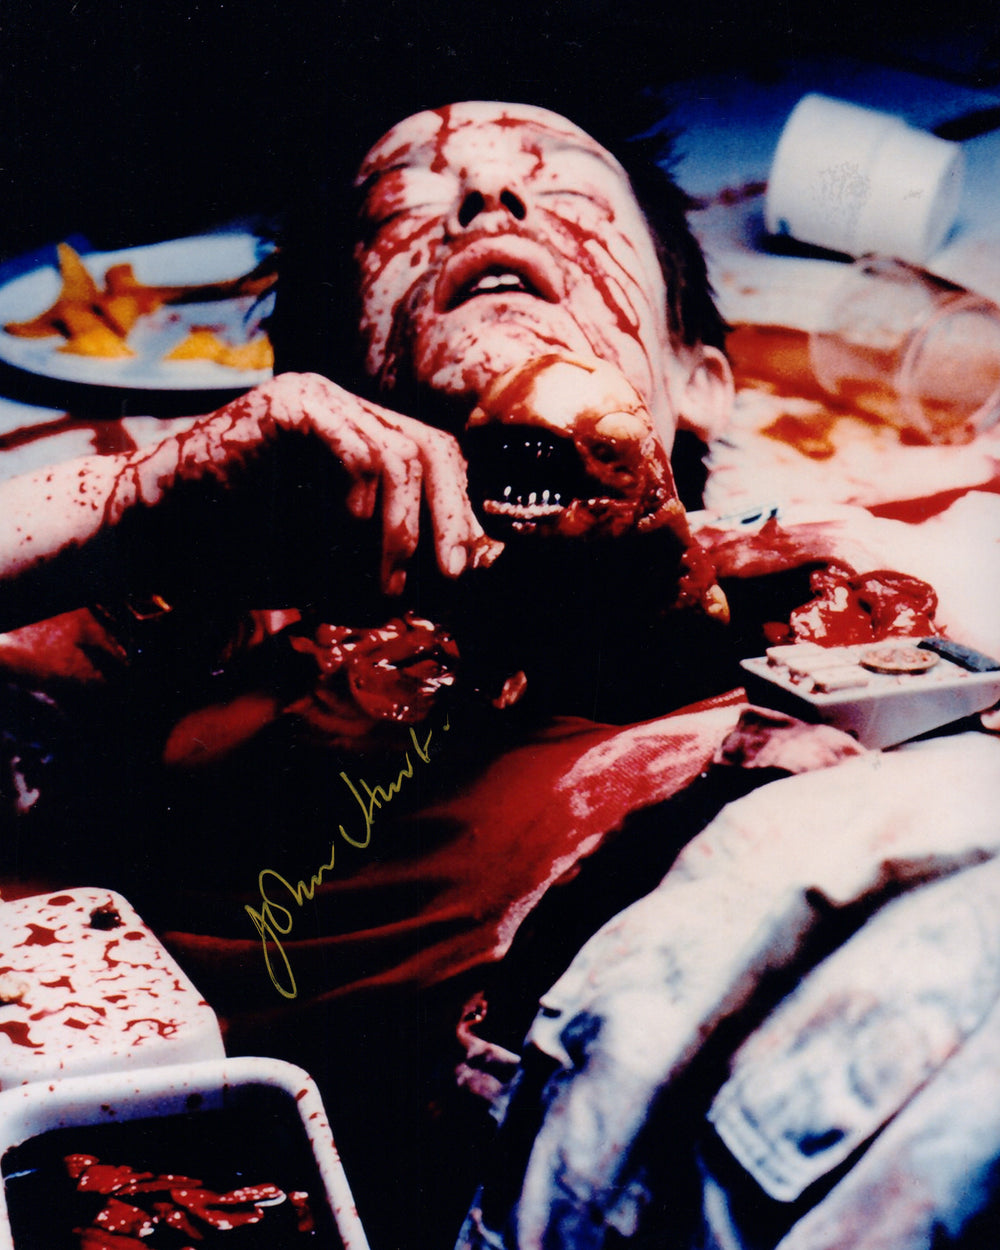 John Hurt as Kane in Iconic Chestburster Scene from Alien Signed 8x10 Photo